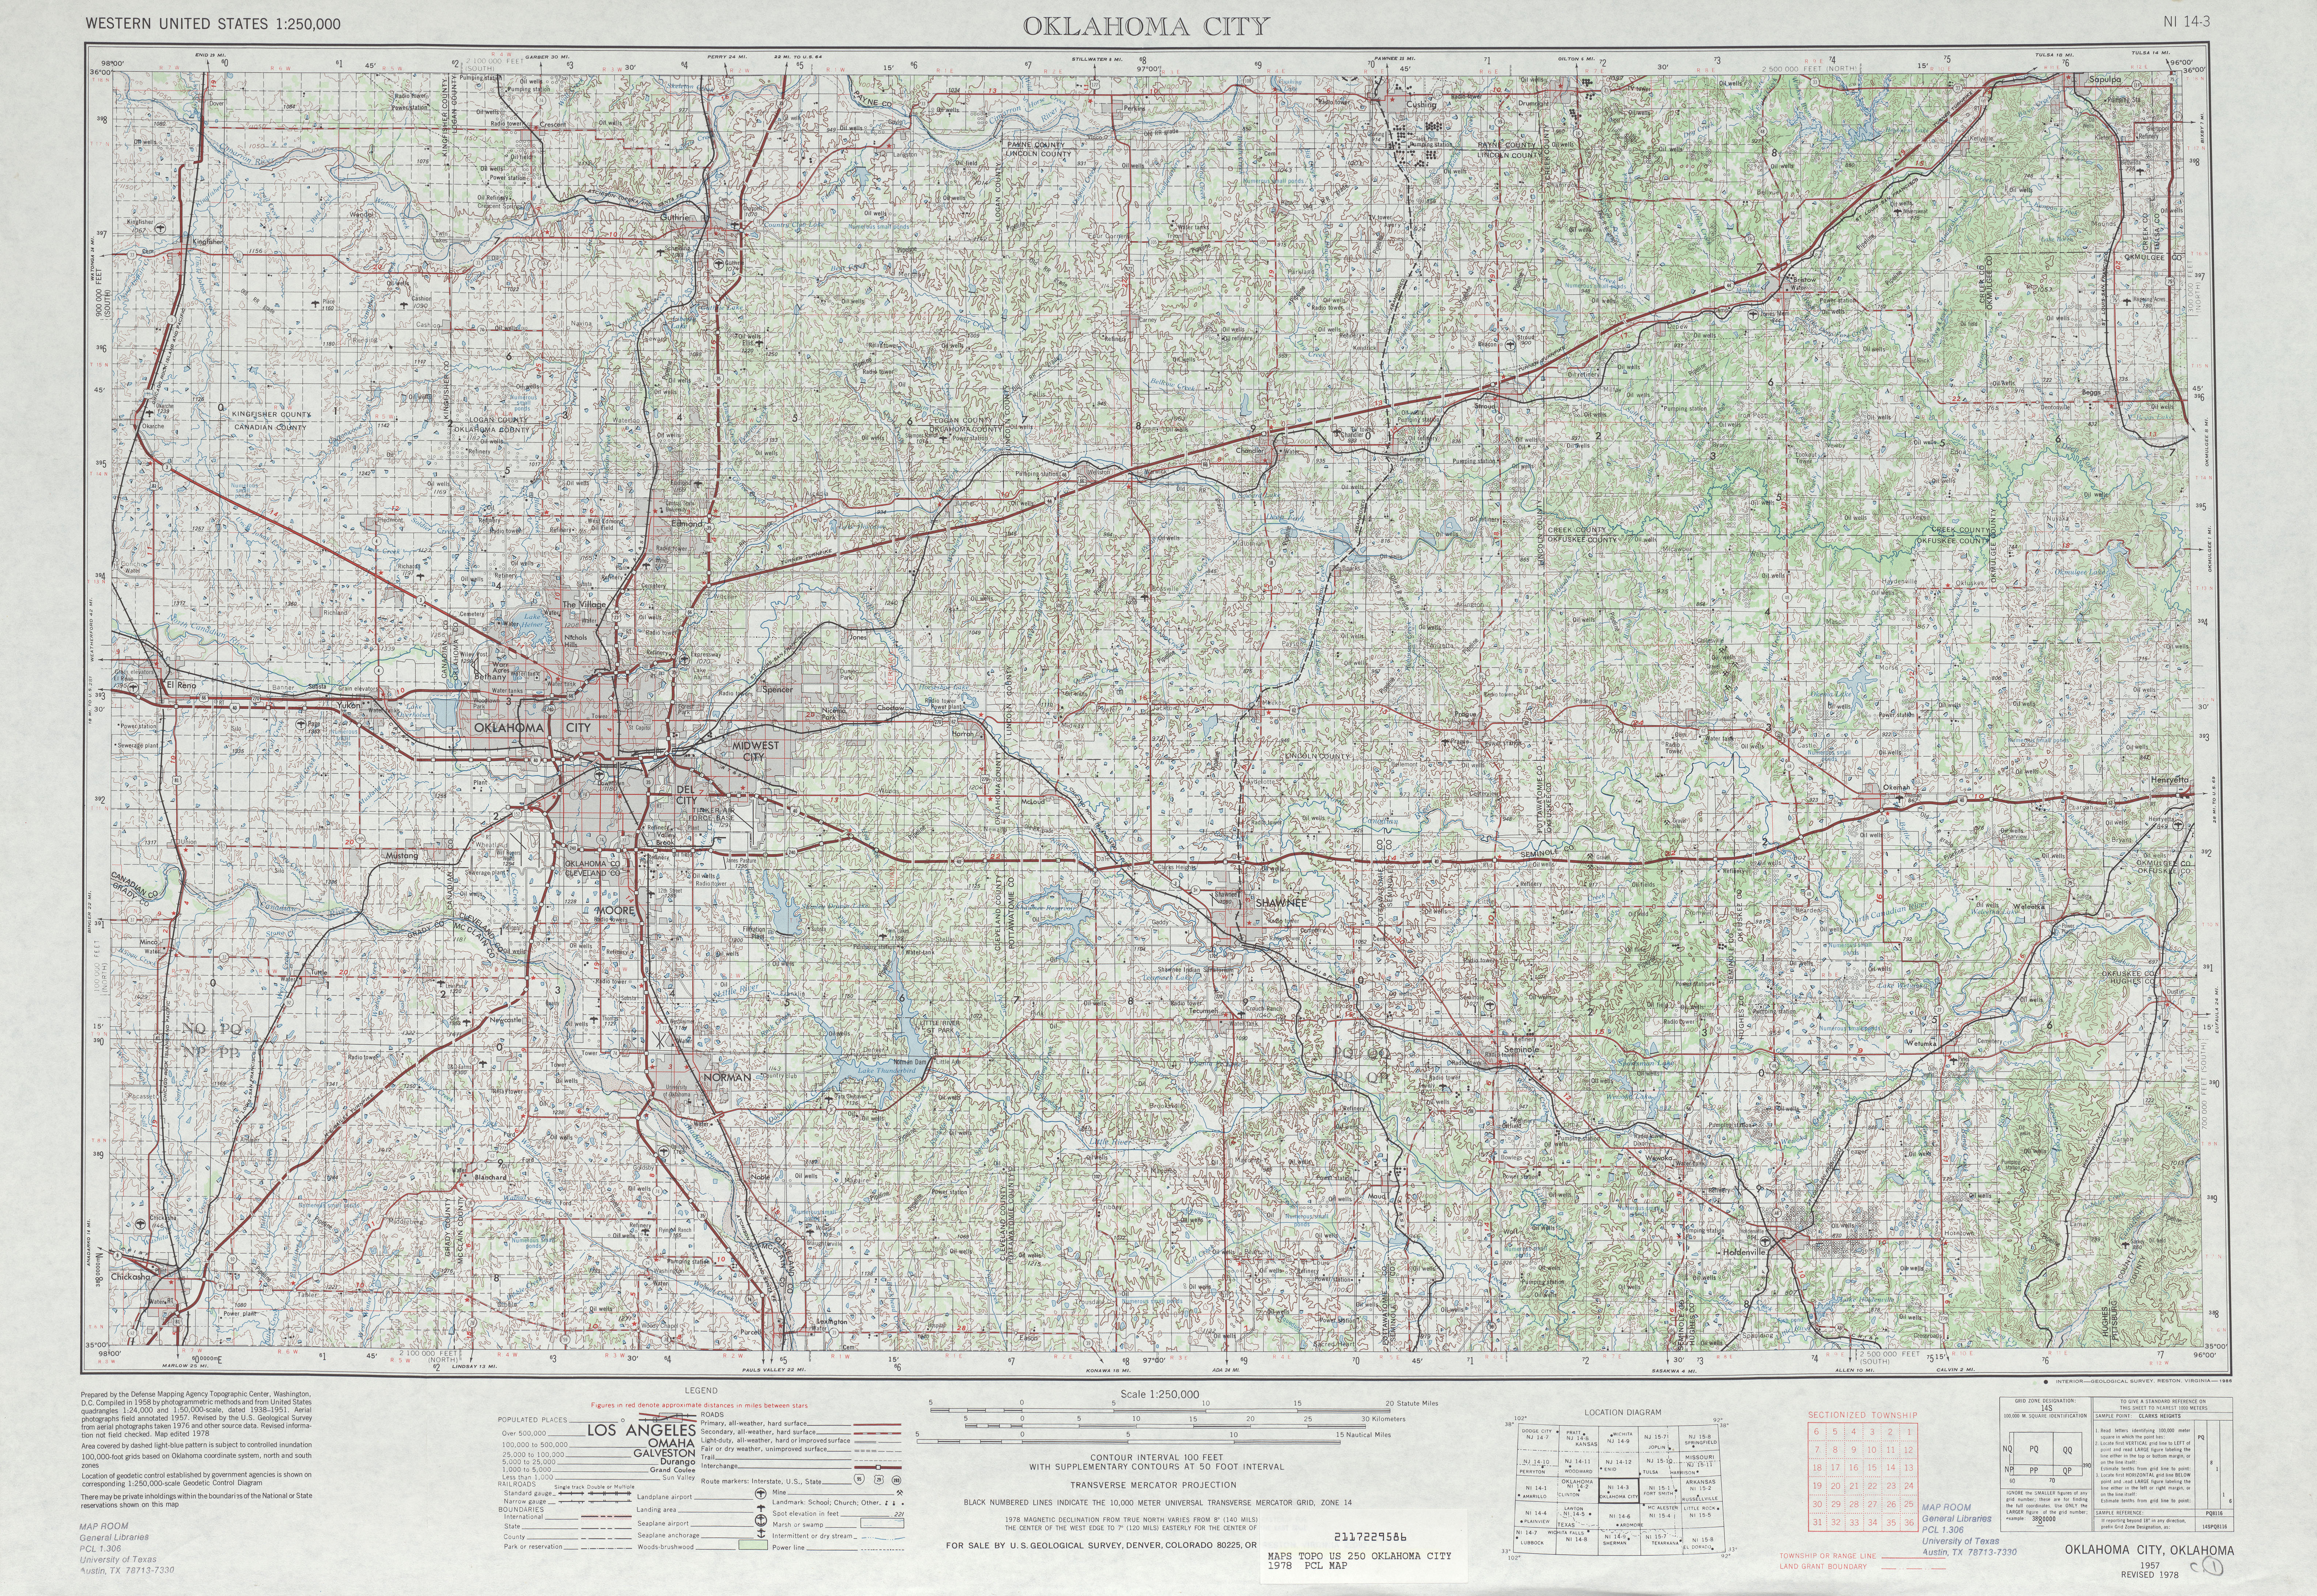 Hoja Oklahoma City del Mapa Topográfico de los Estados Unidos 1978